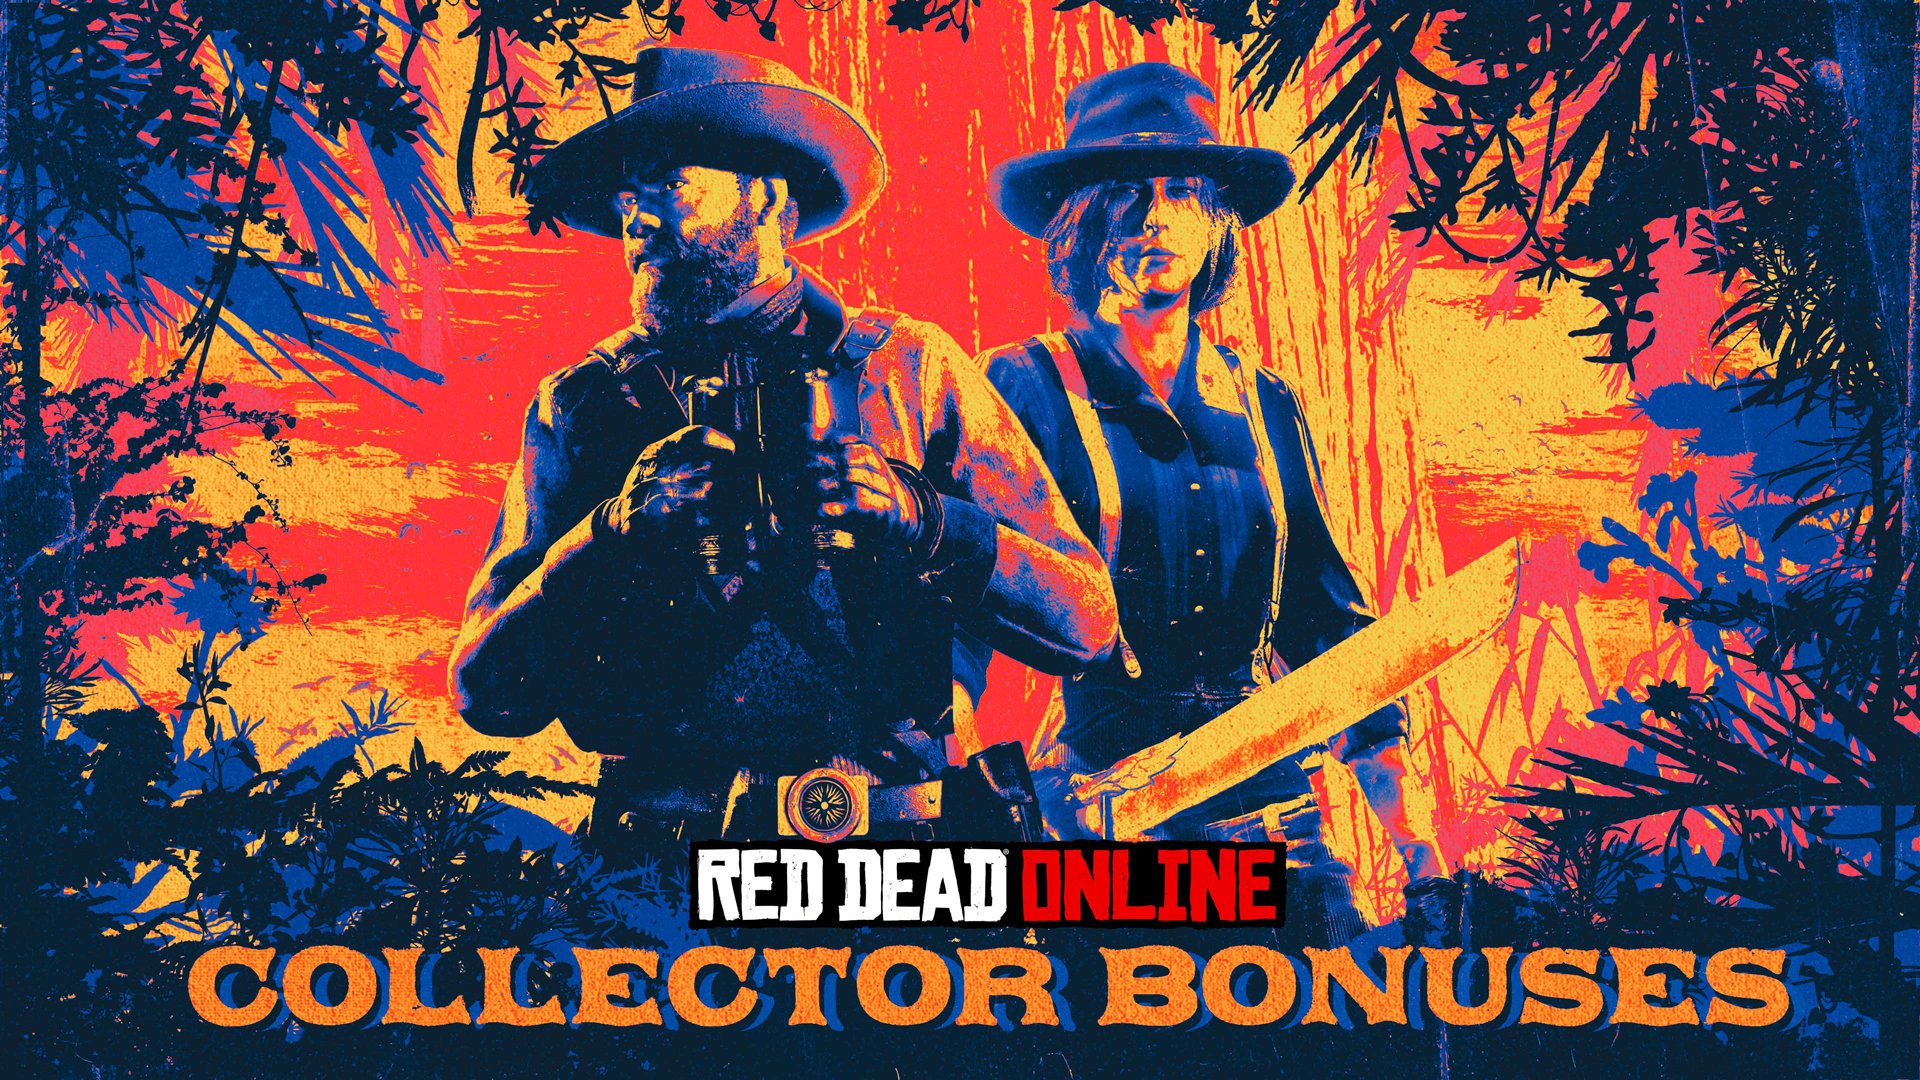 Collectionneurs dans Red Dead Online